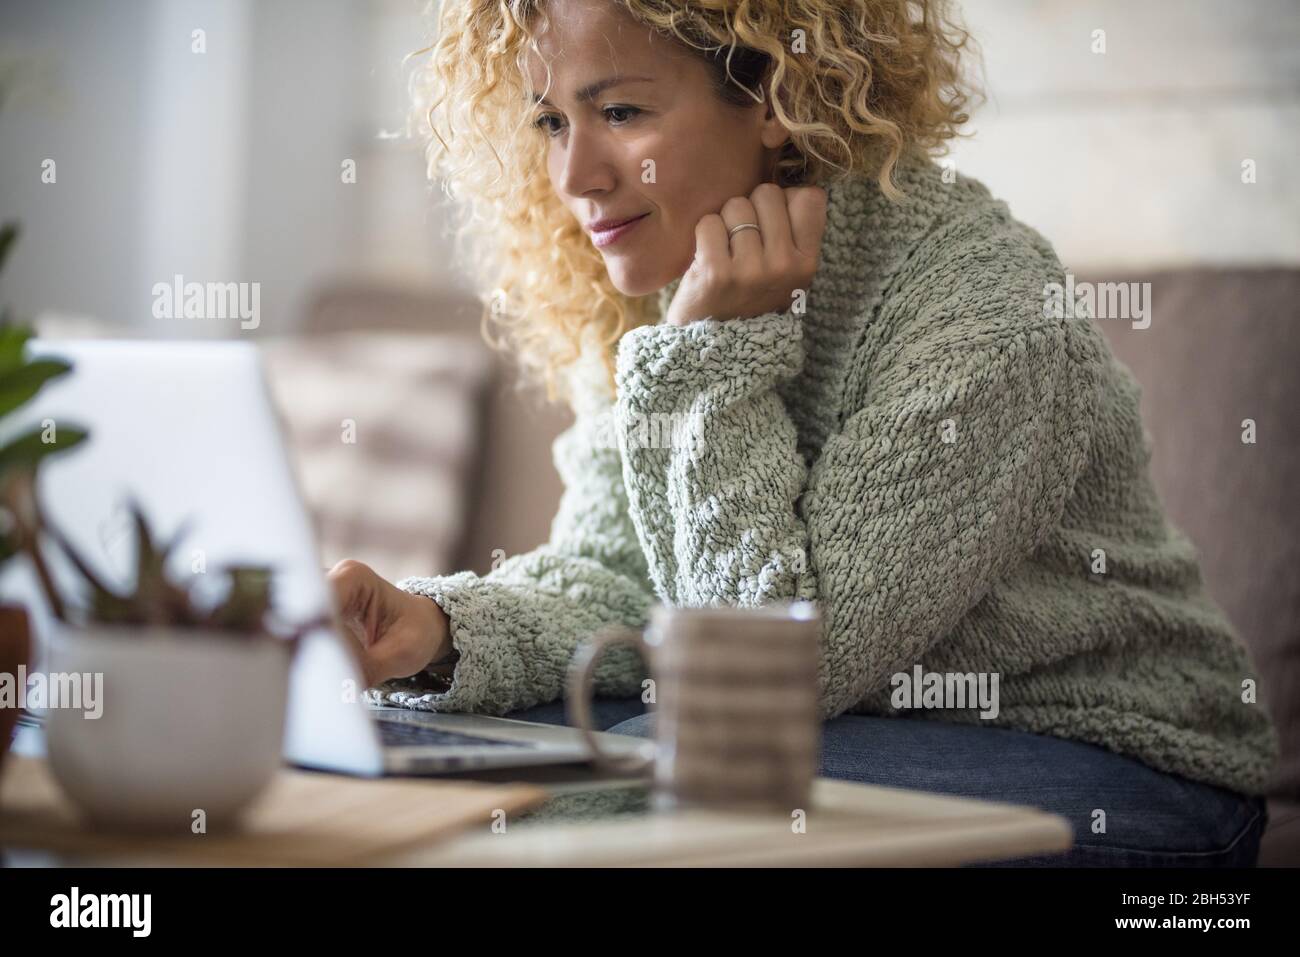 Femme souriante travaillant avec un ordinateur portable sur un canapé Banque D'Images